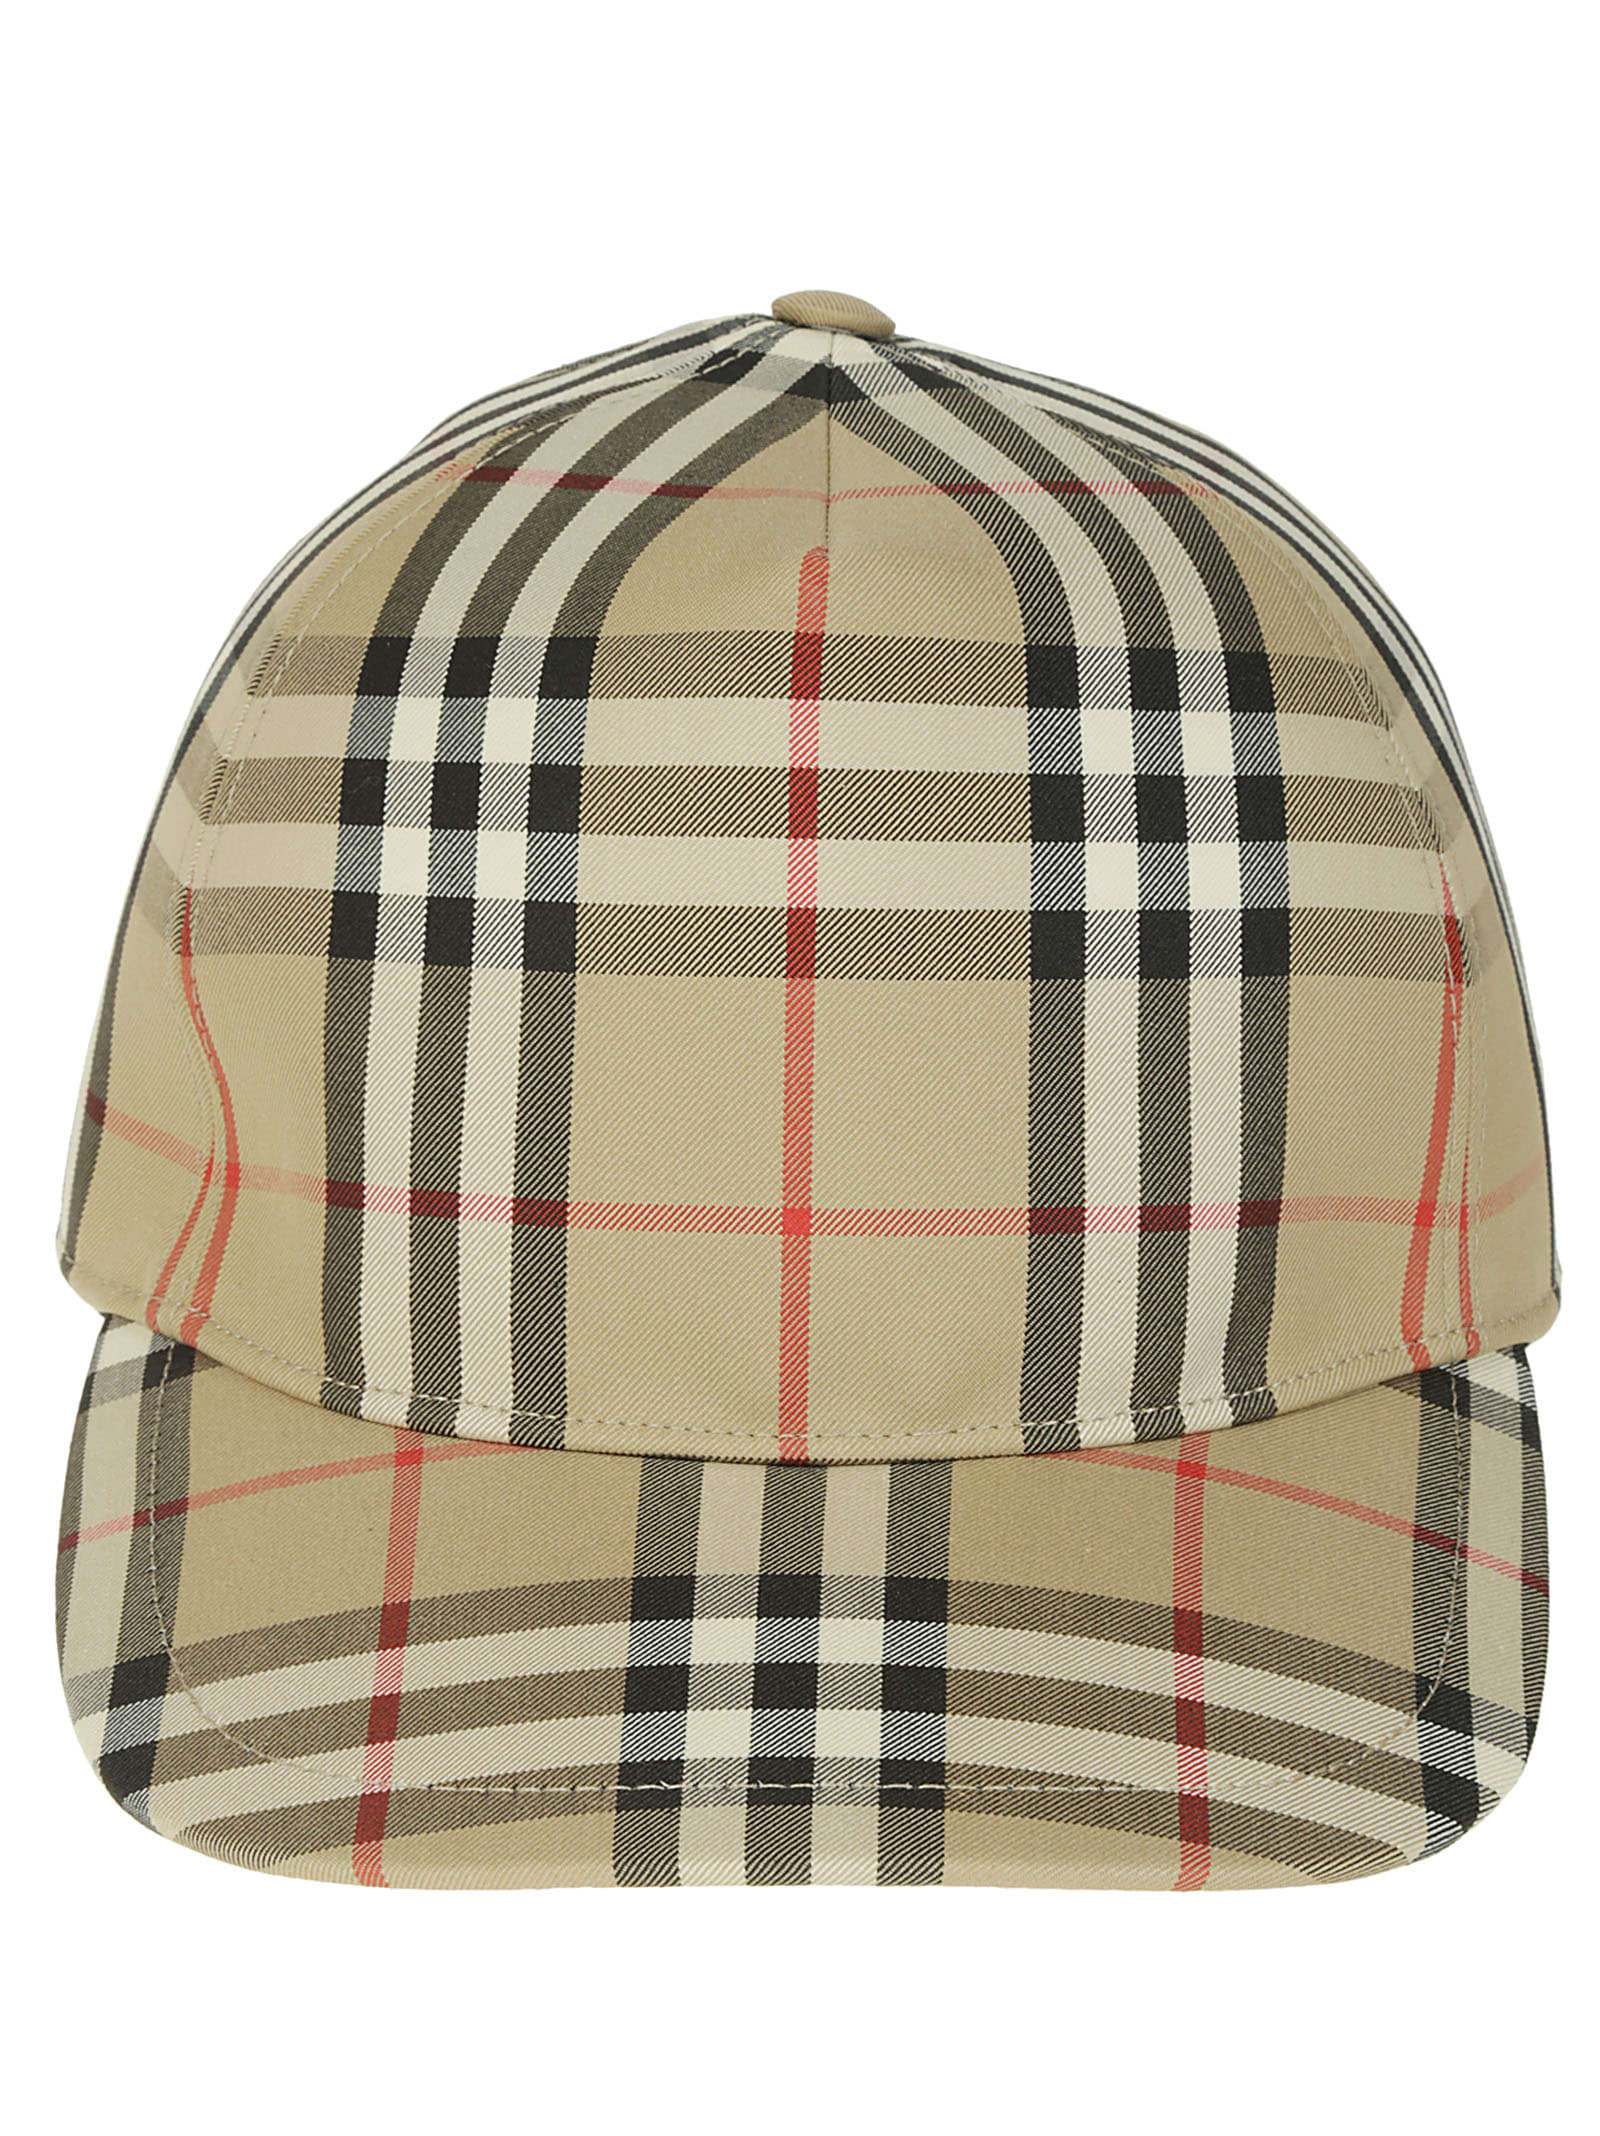 Burberry Vintage Check Cap